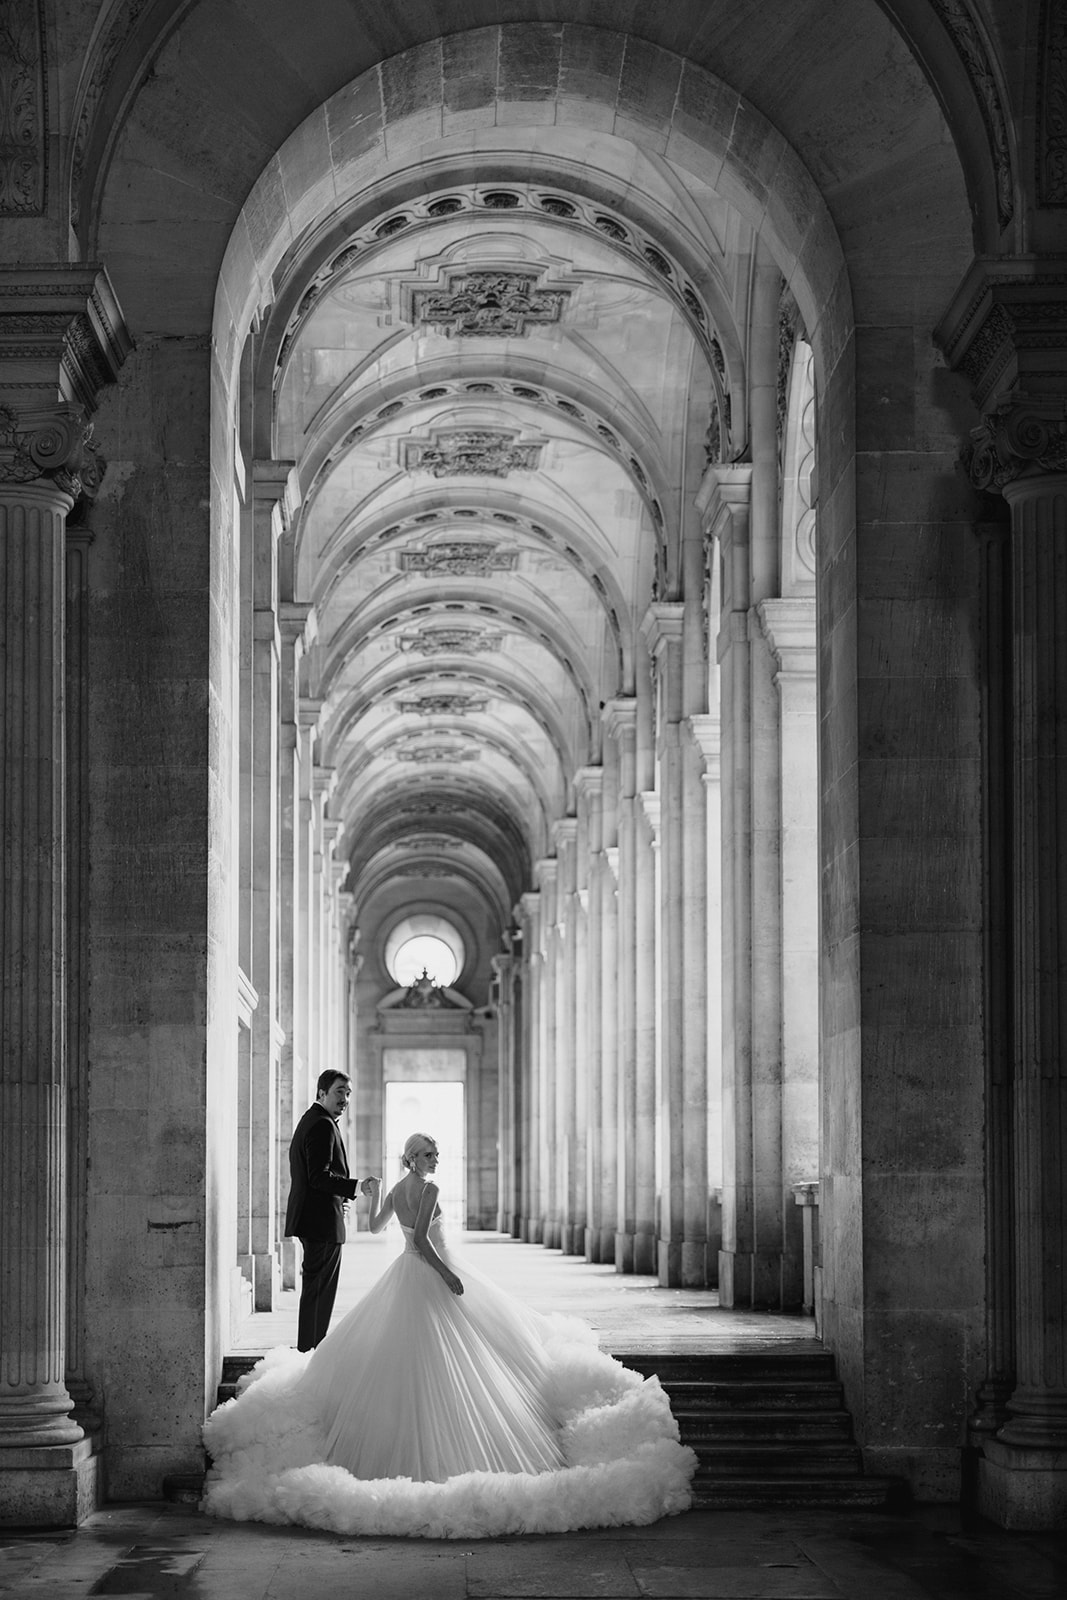 The Louvre Pre-Wedding Photos - Paris Engagement